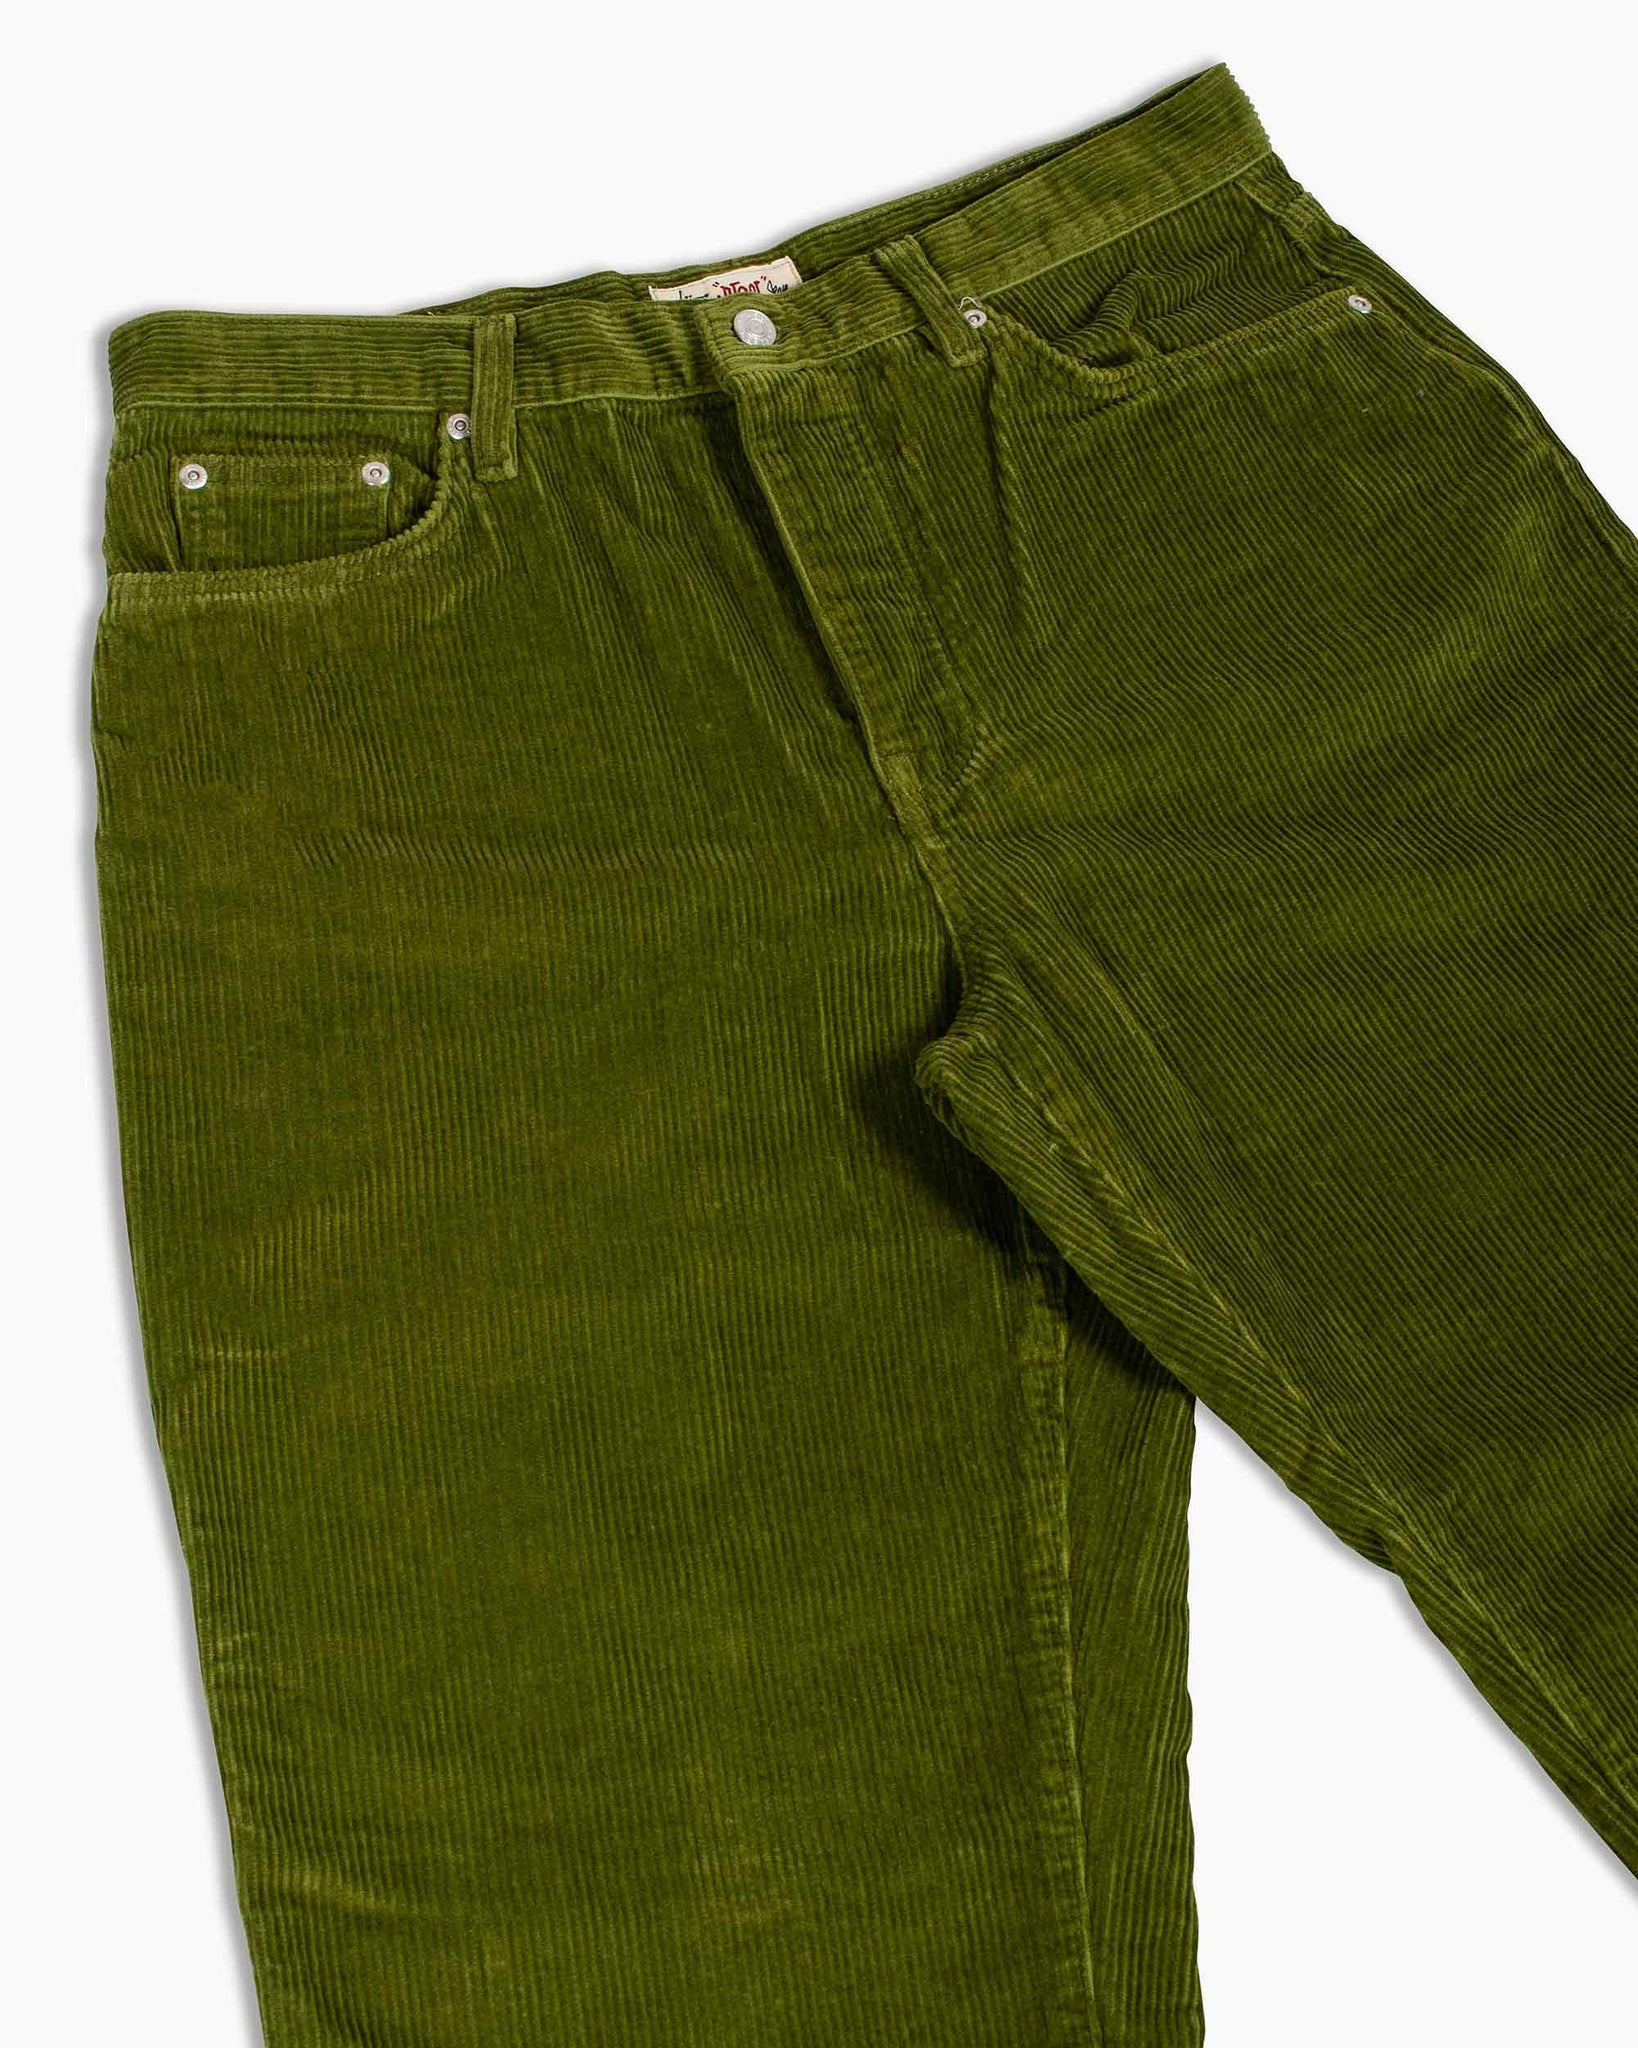 Stüssy Corduroy Big Ol' Jeans Olive Details